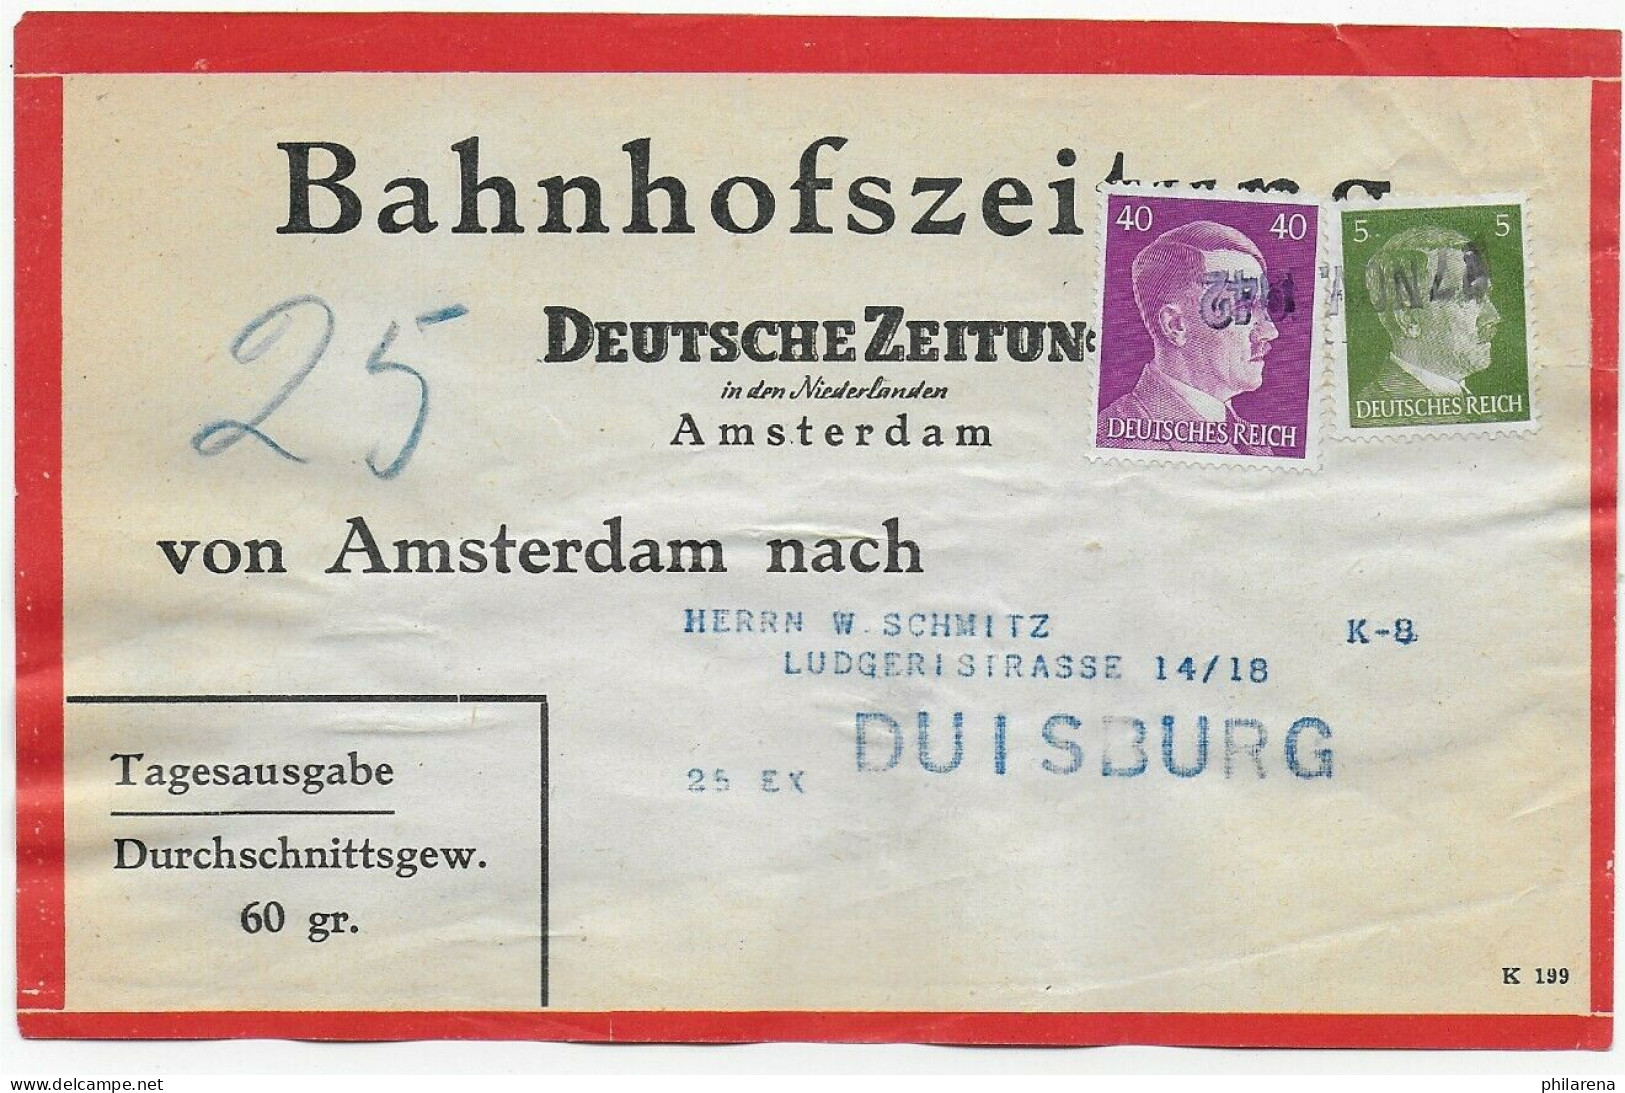 Bahnhofszeitung: 25 Stück Deutsche Zeitung, Niederlande 1942, Amsterdam Feldpost - Feldpost 2. Weltkrieg